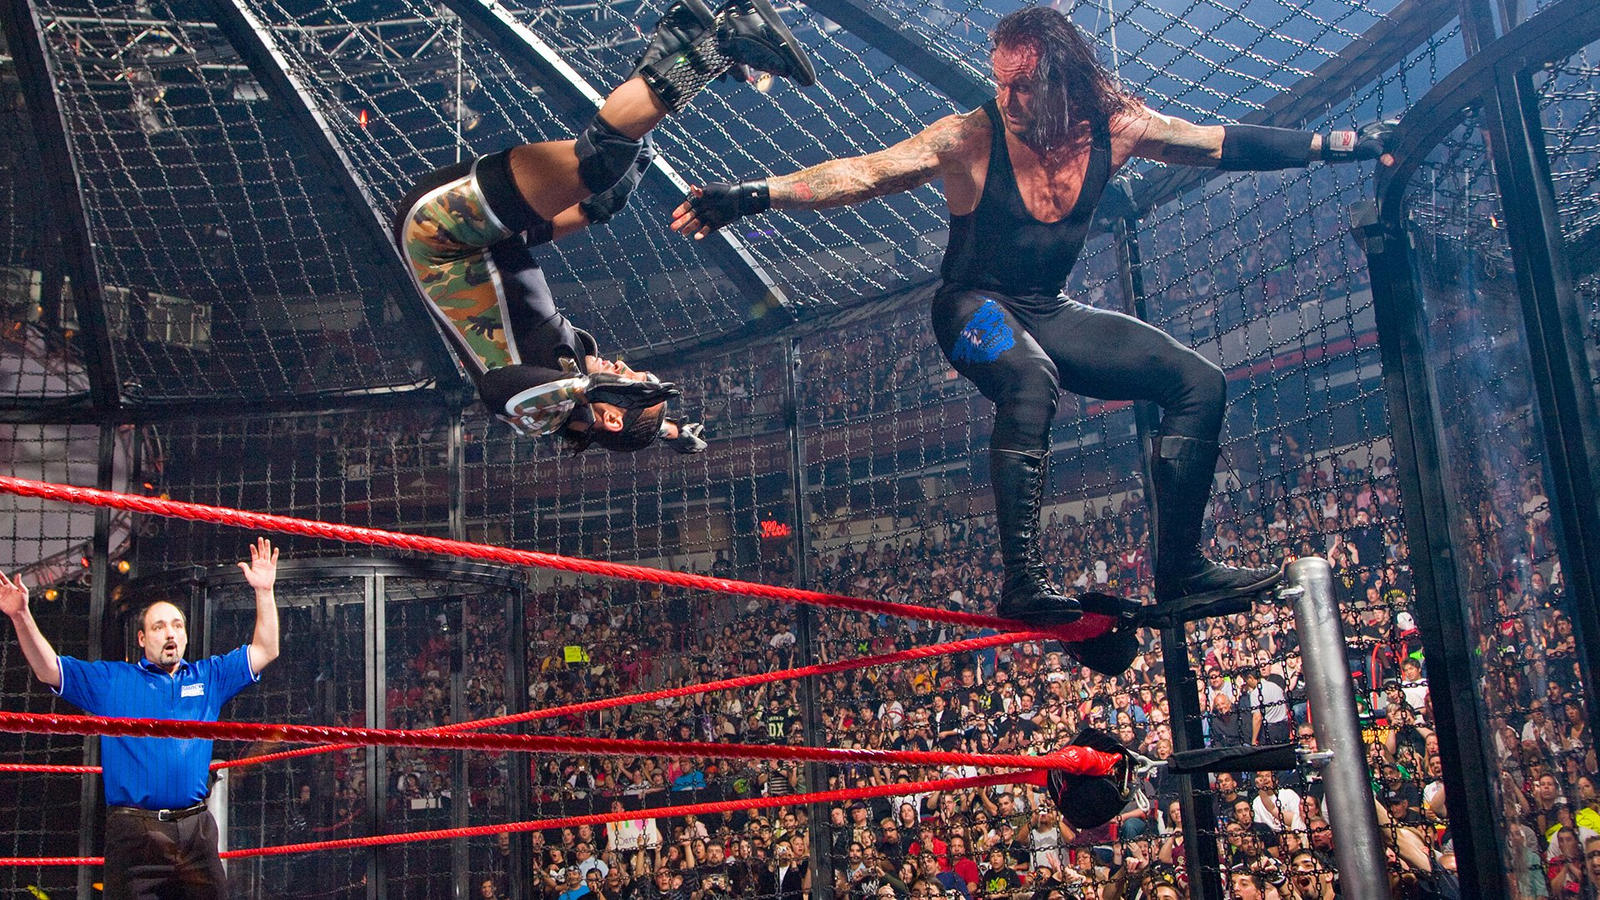 ТОП-20 величайших моментов в Elimination Chamber матчах по версии WWE